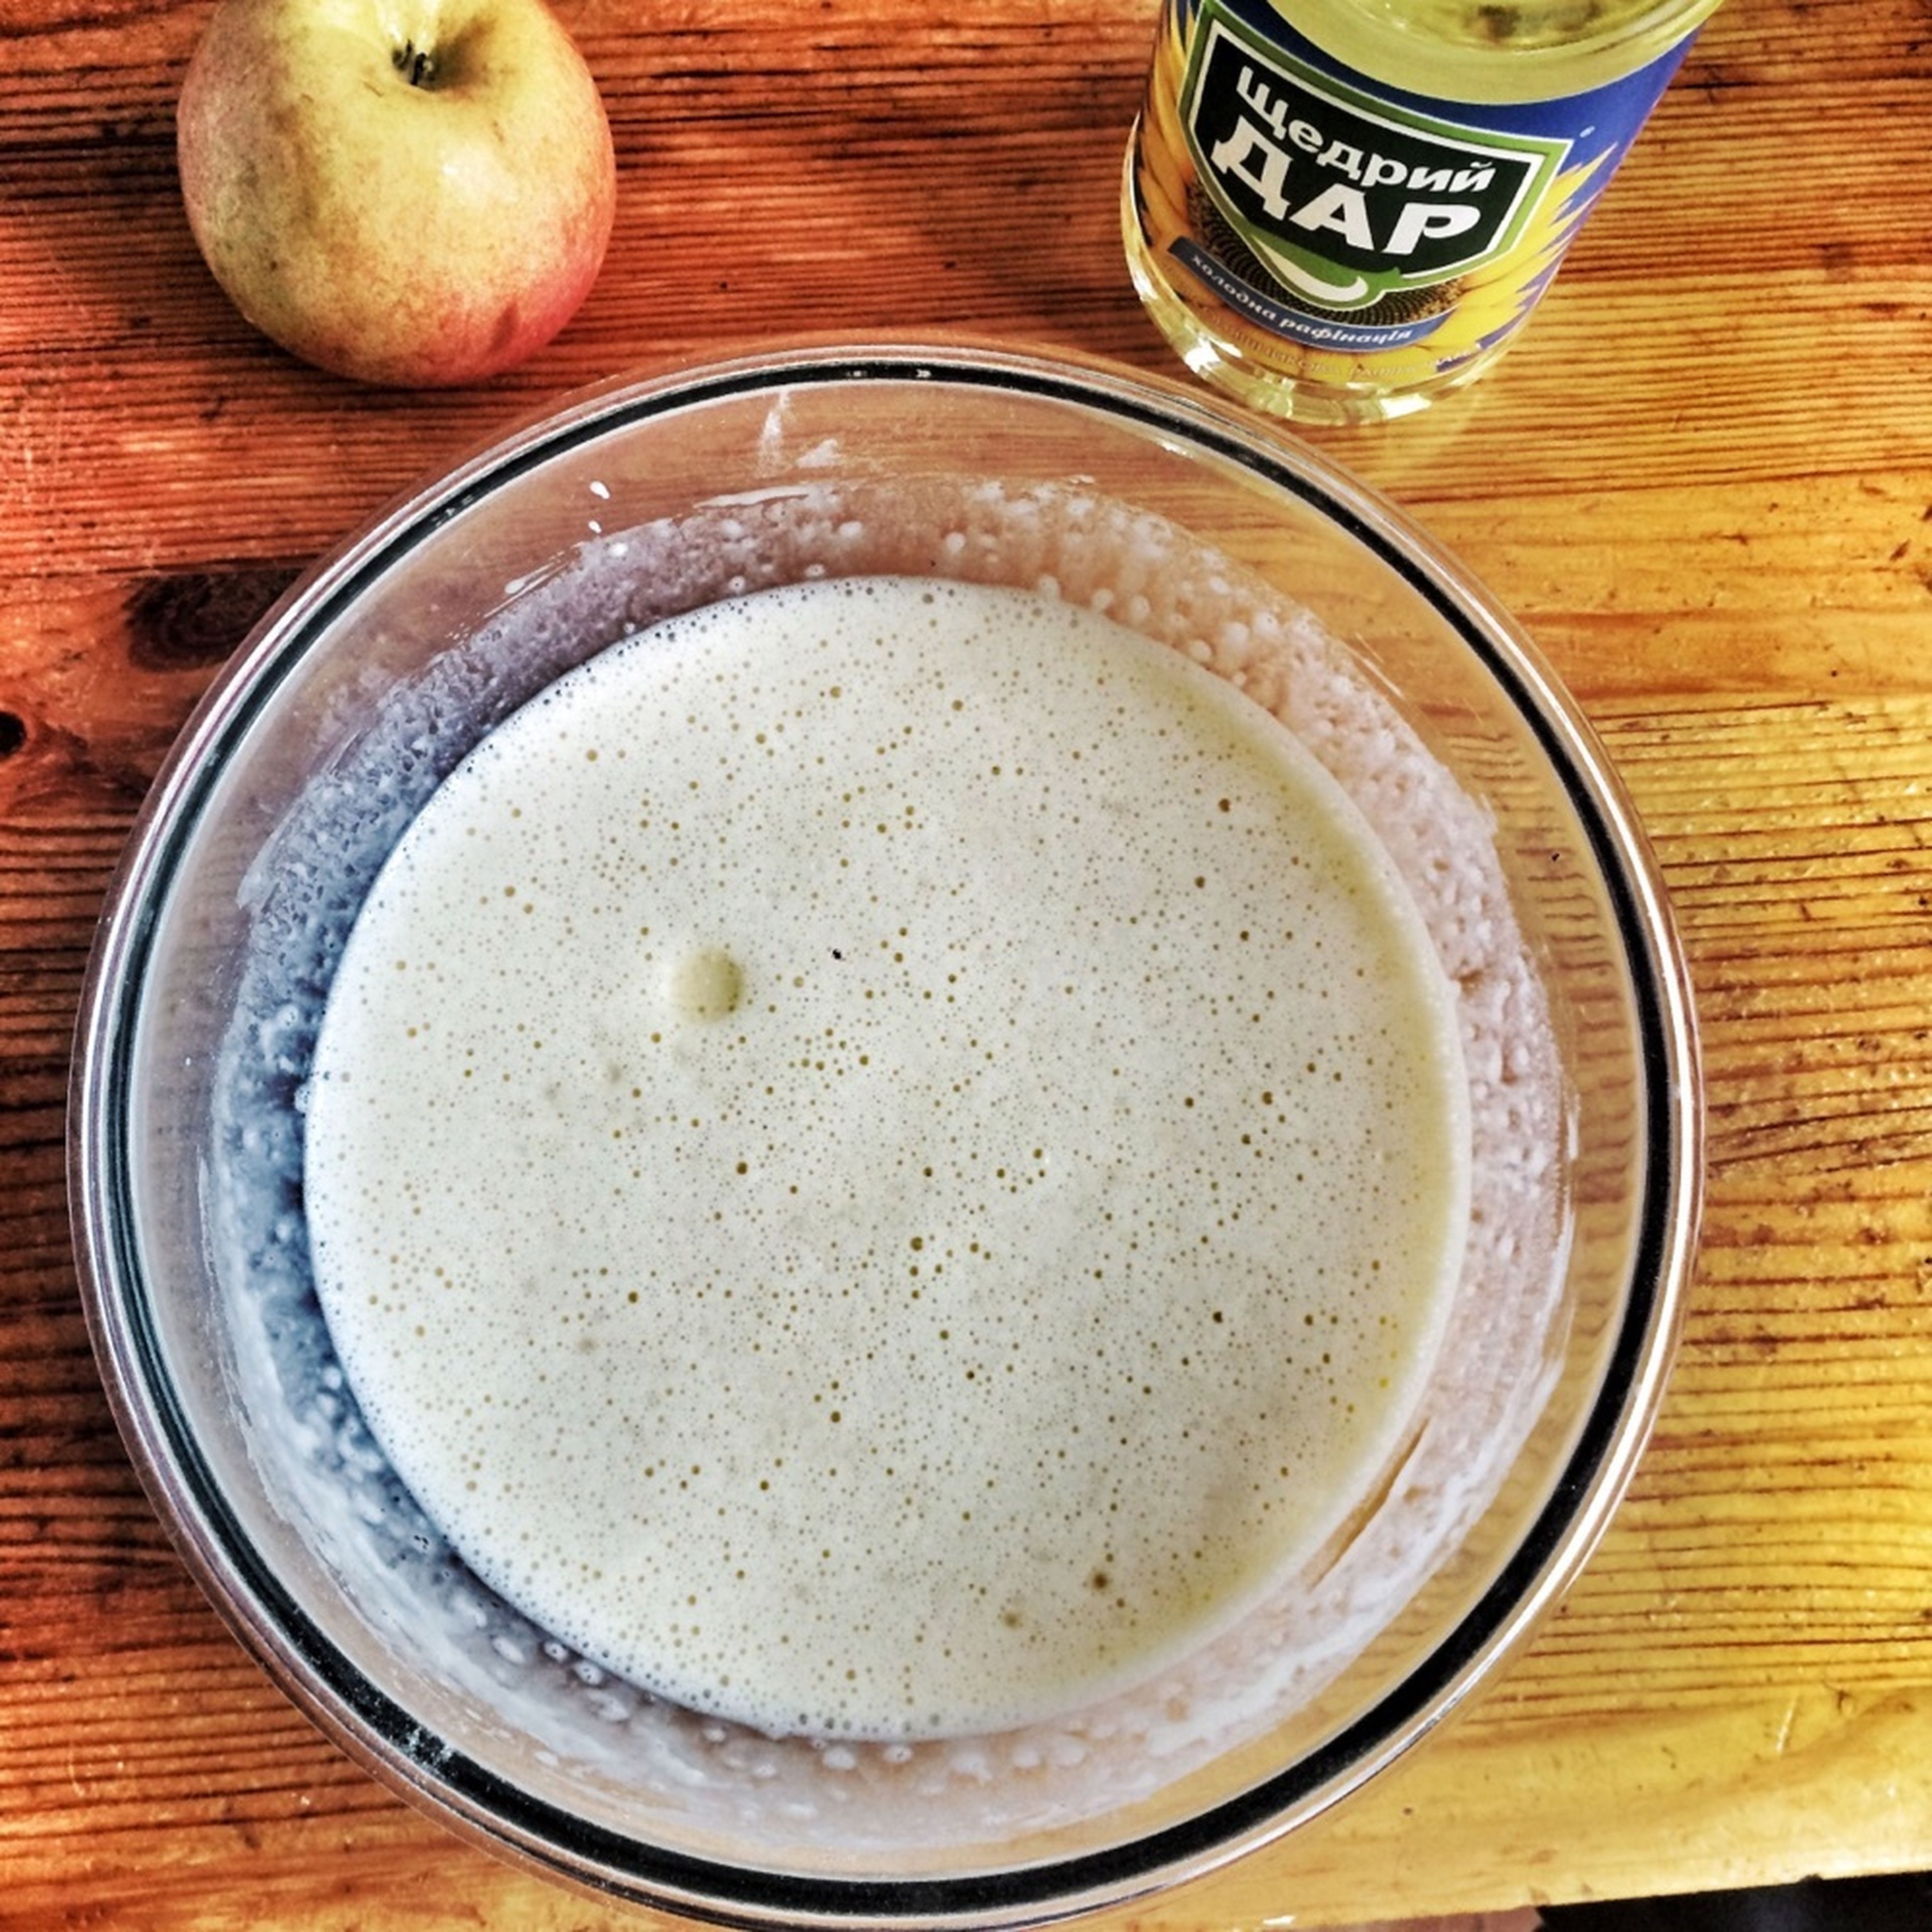 Öl hinzufügen und rühren. Zutaten für die Füllung vorbereiten: Äpfel reiben und Zimt hinzugeben.